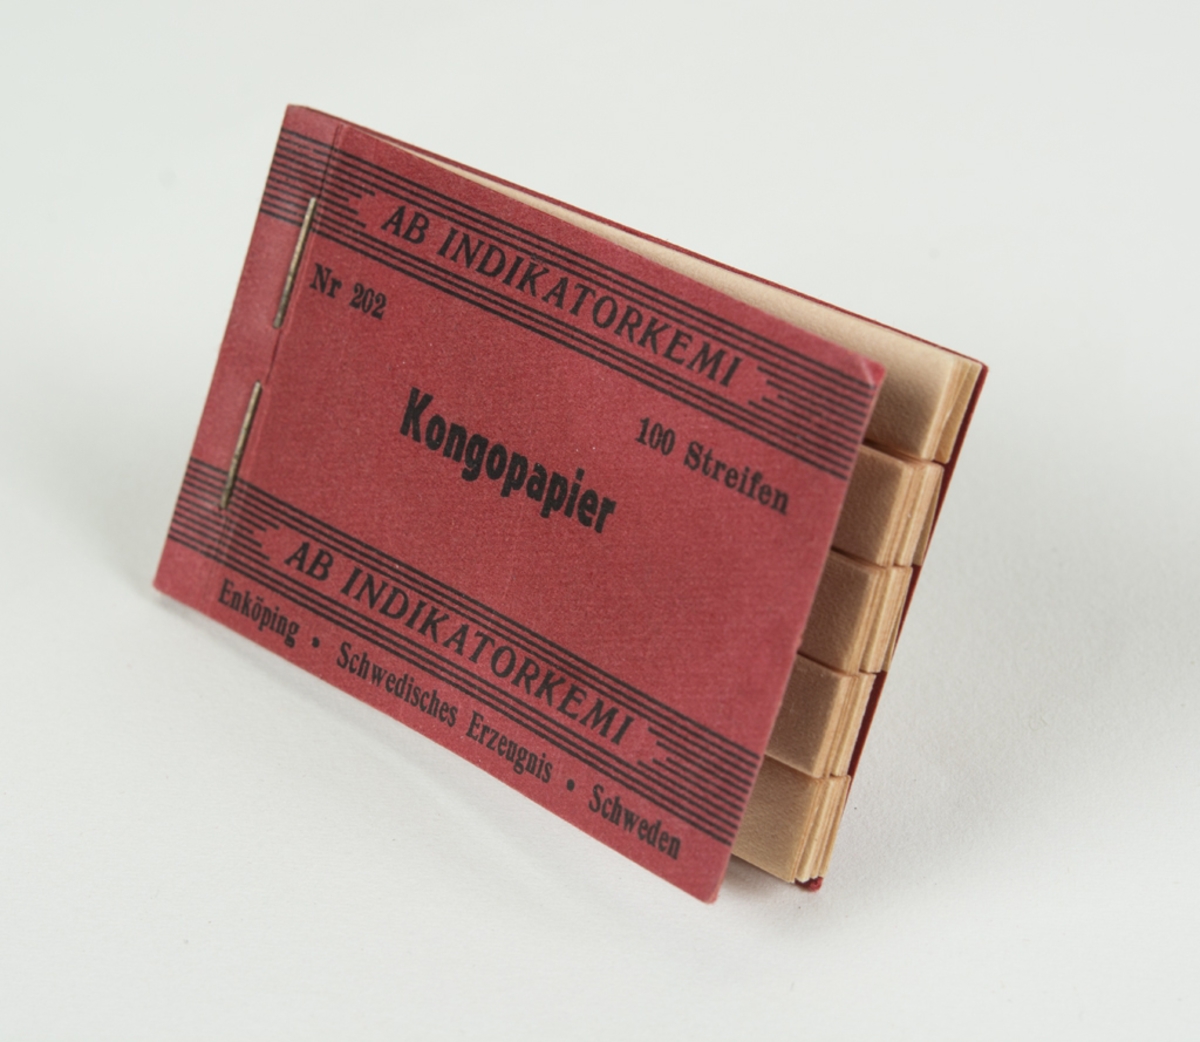 Ett häfte med lackmuspapper, kongopapier. Används vanligen för att mäta PH-värde ger röd färg vid pH 4,5 och blå vid 8,3.